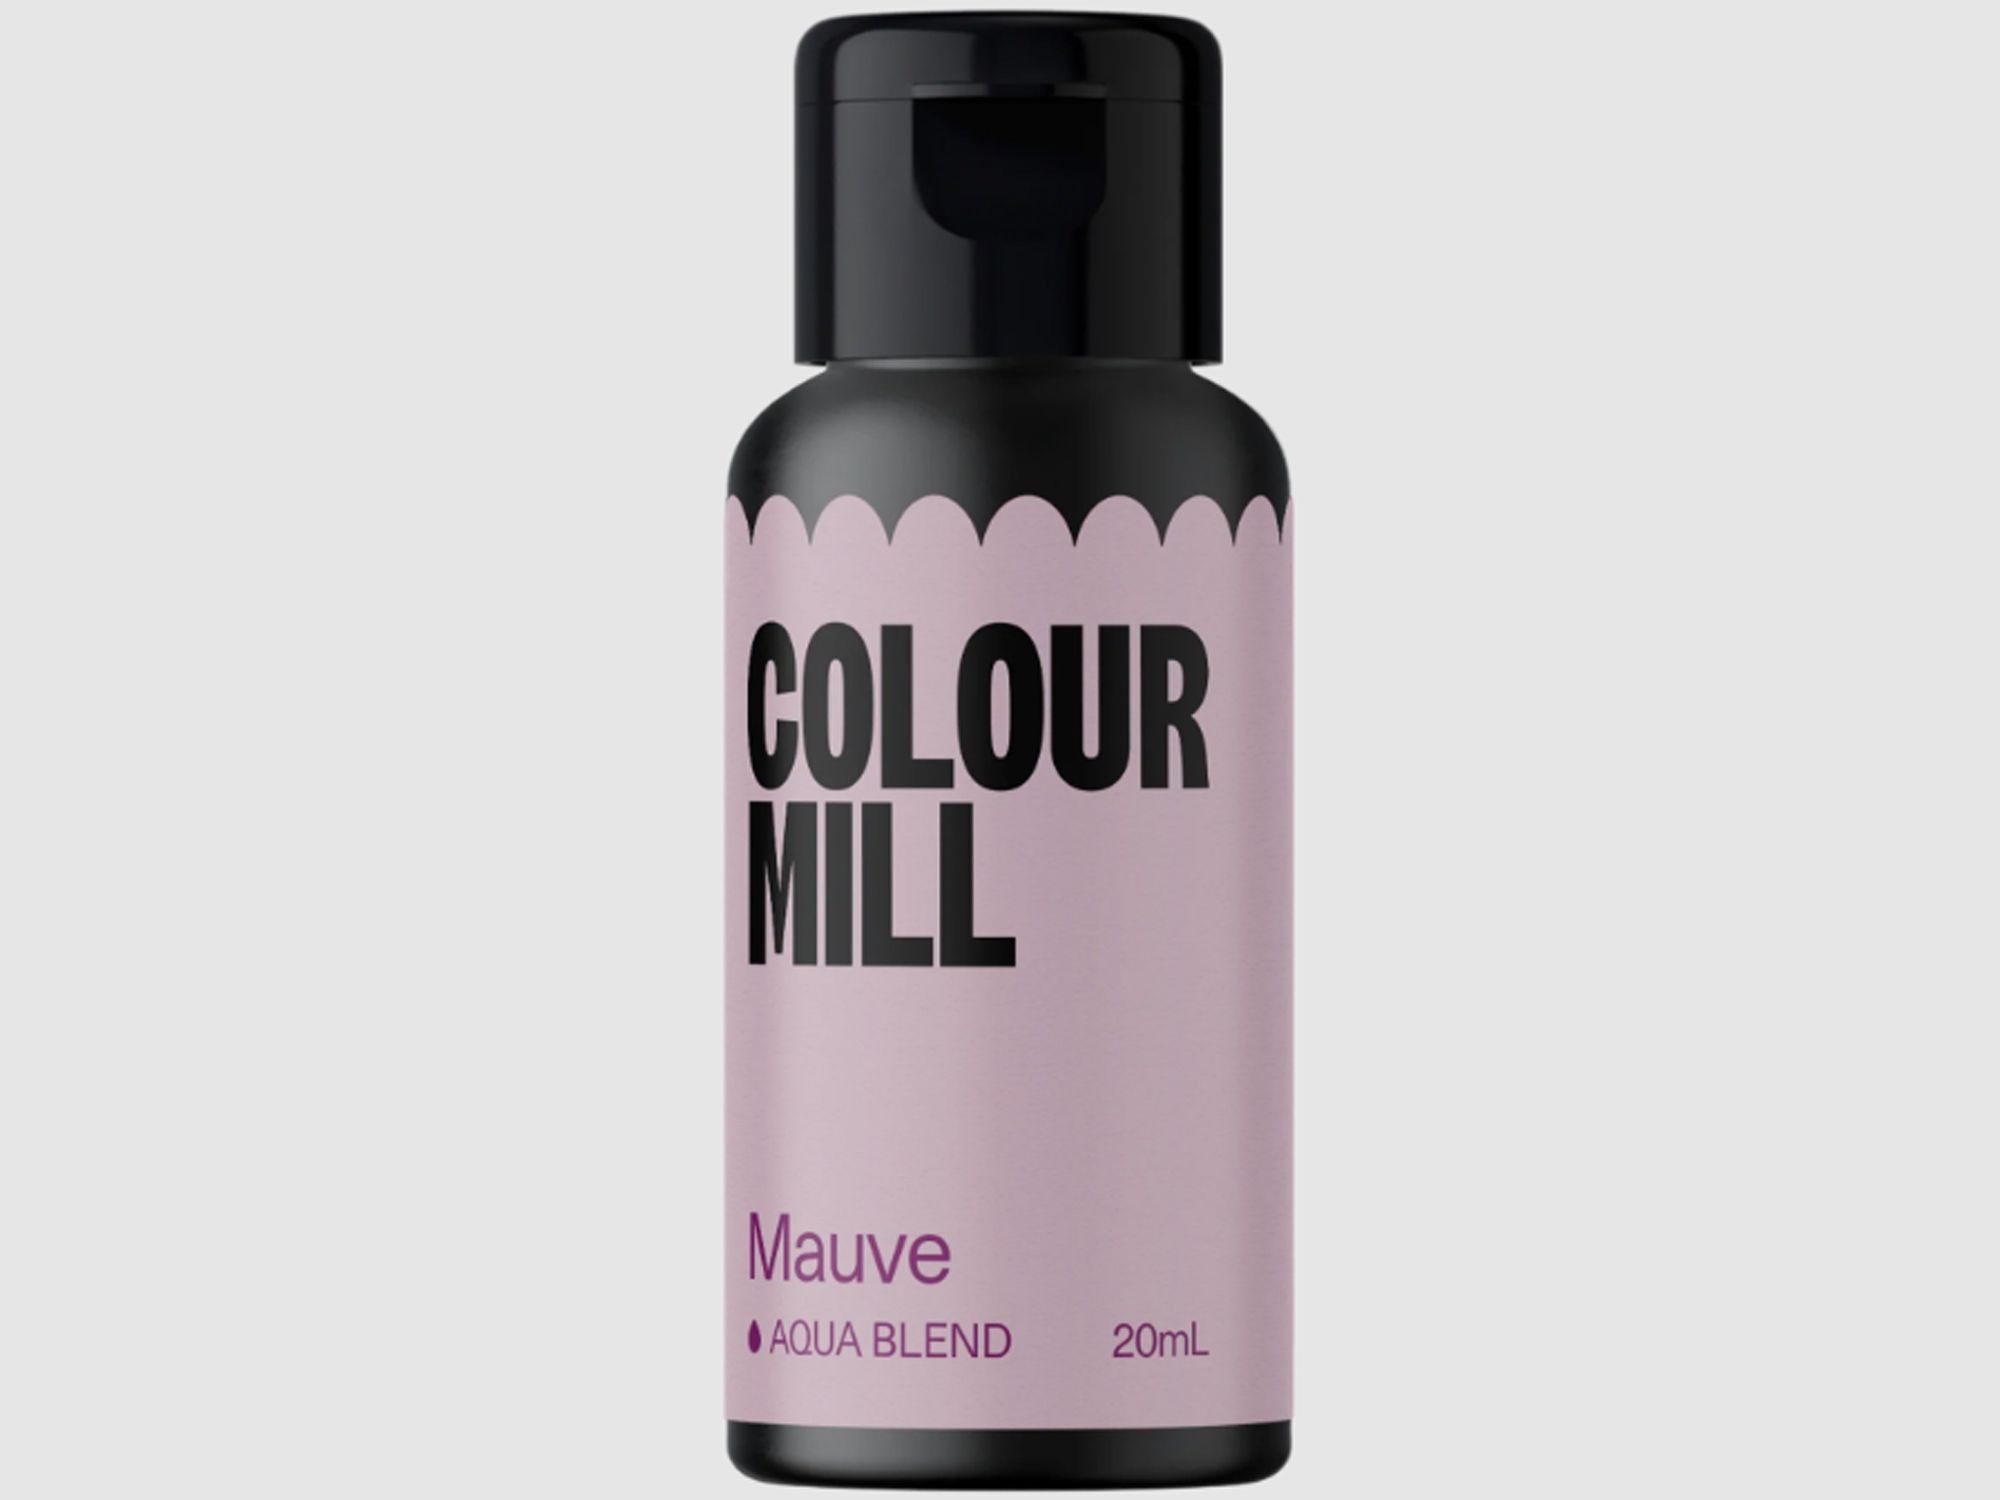 Colour Mill Mauve (Aqua Blend) 20ml